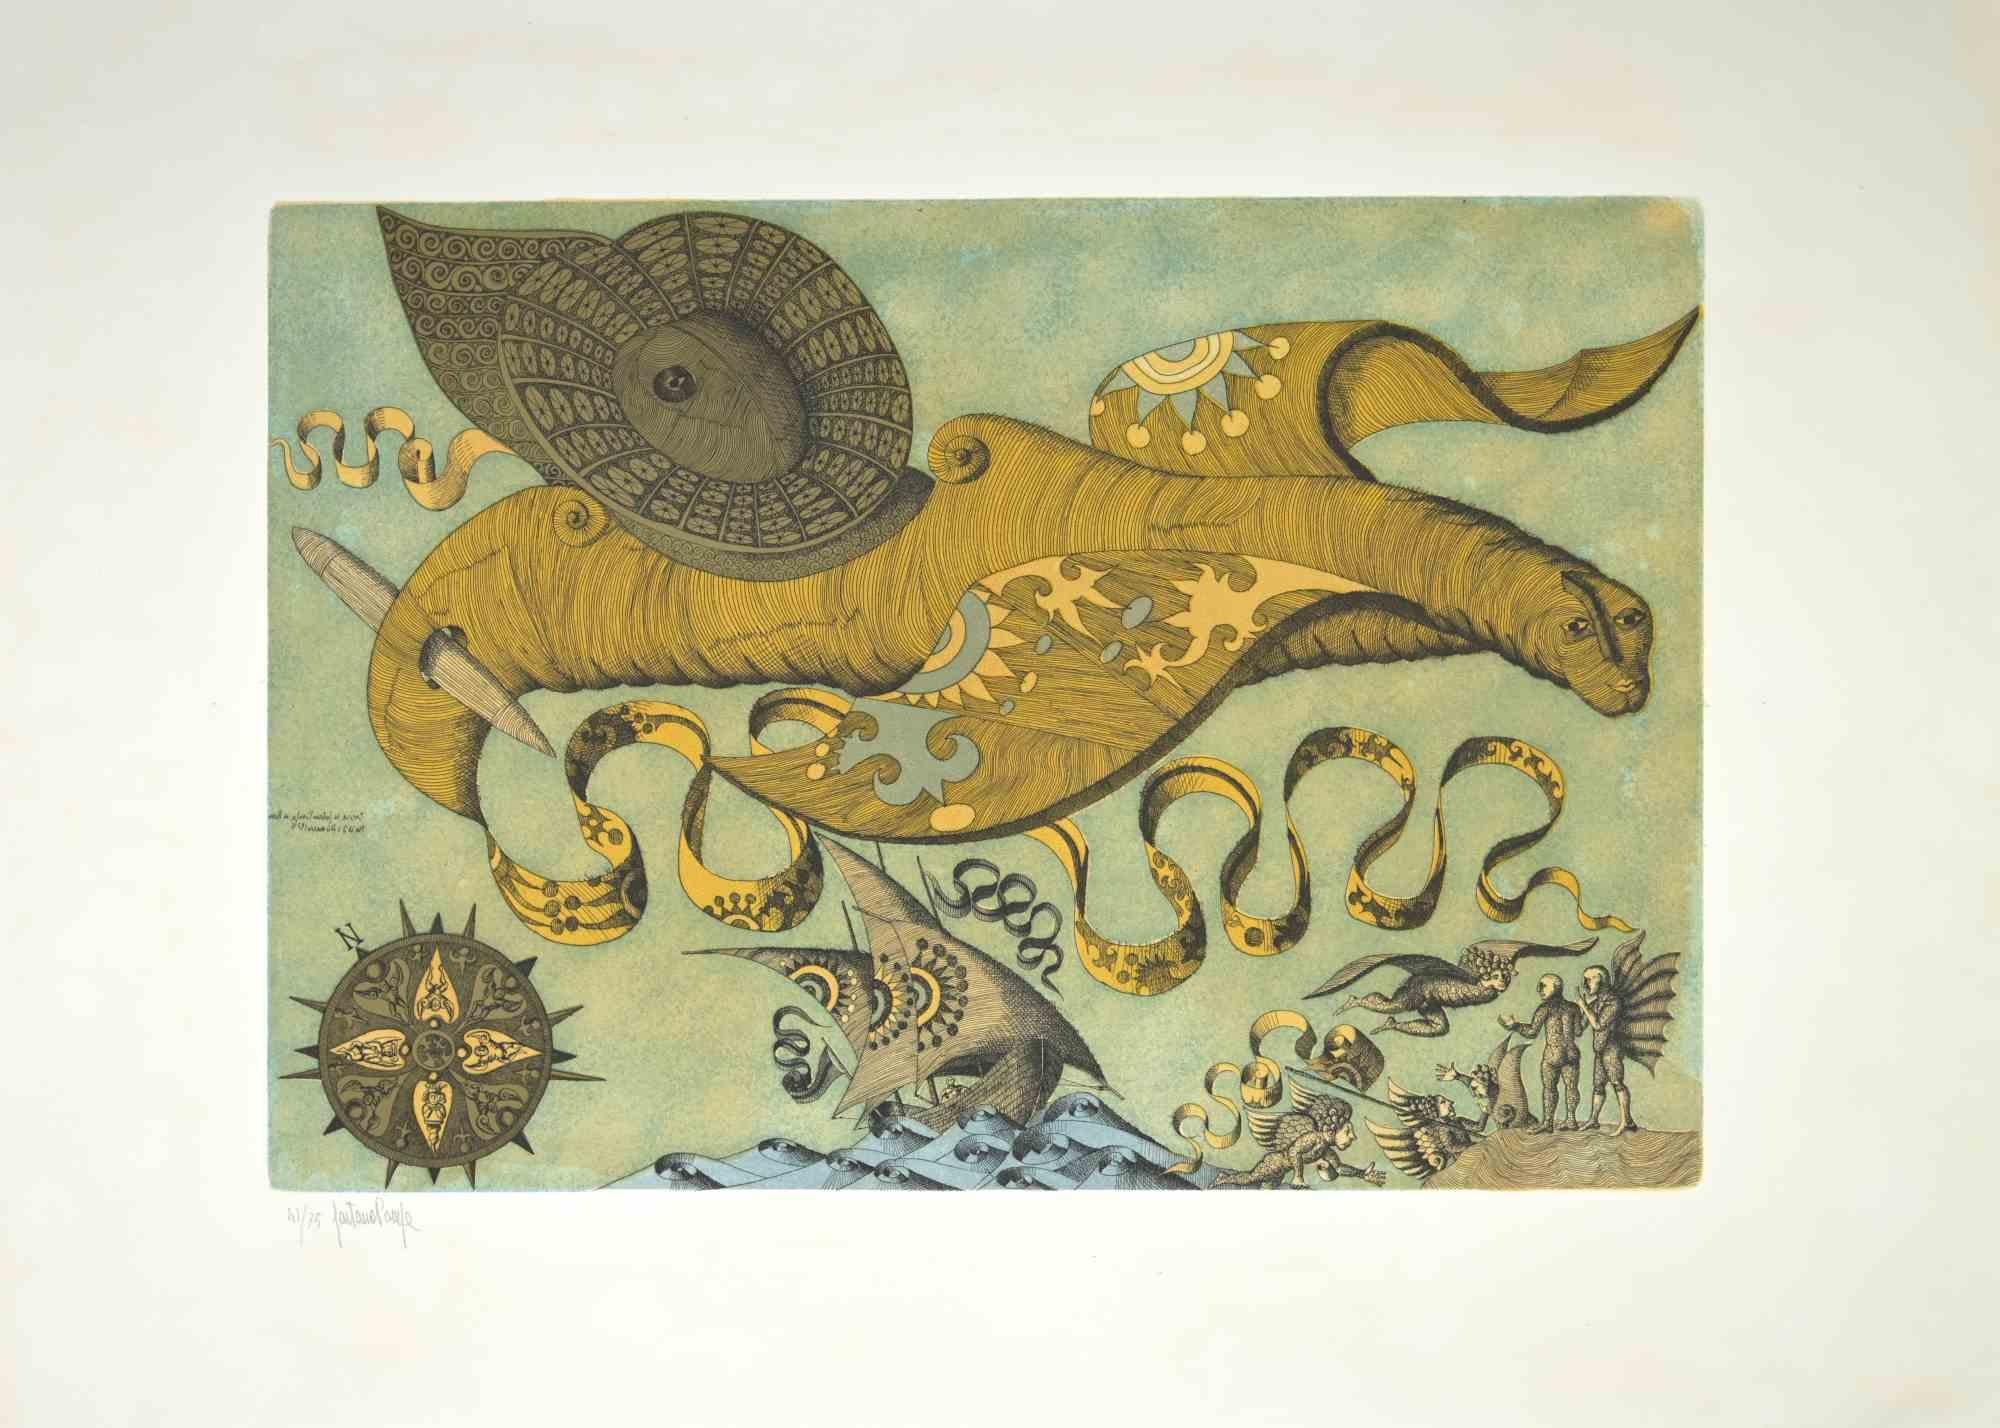 L'animal imaginaire est une œuvre d'art réalisée par Gaetano Pompa (1933, Forenza- 1998) dans les années 1970.

L'œuvre est une aquatinte et une gravure sur papier.

Signé à la main dans le coin gauche. Édition de 75 exemplaires, numérotés,